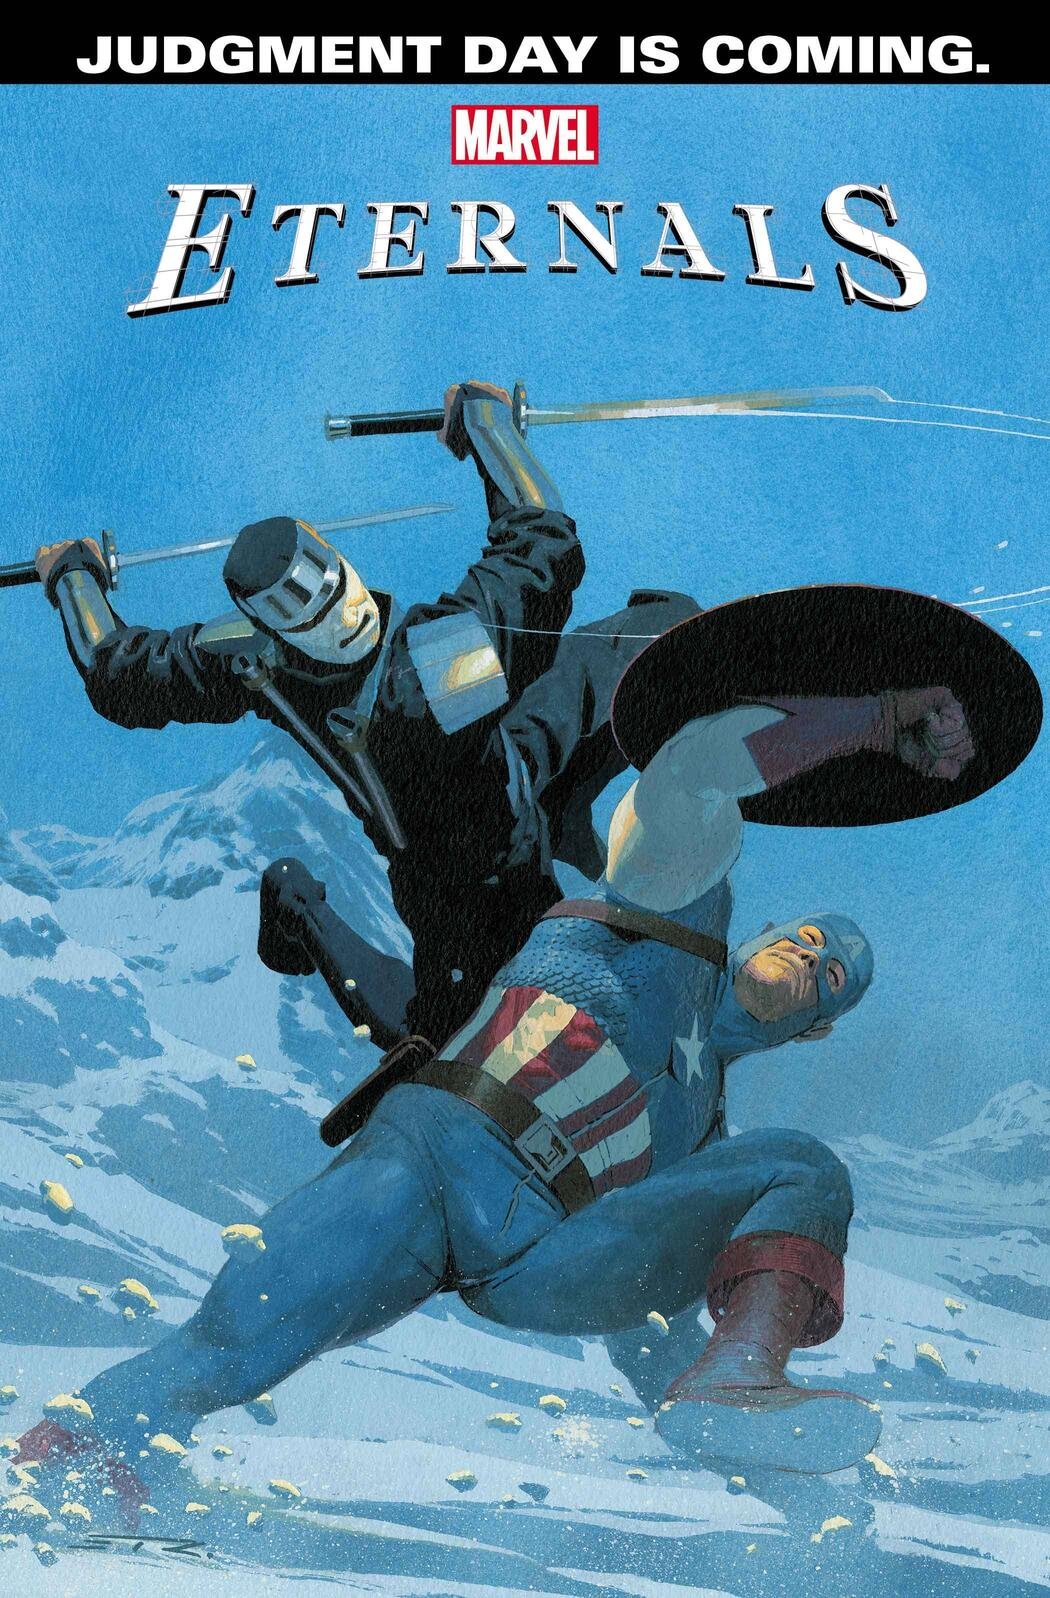 Cover di Eternals 11 di Esad Ribic, prologo a Judgment Day contro gli Avengers